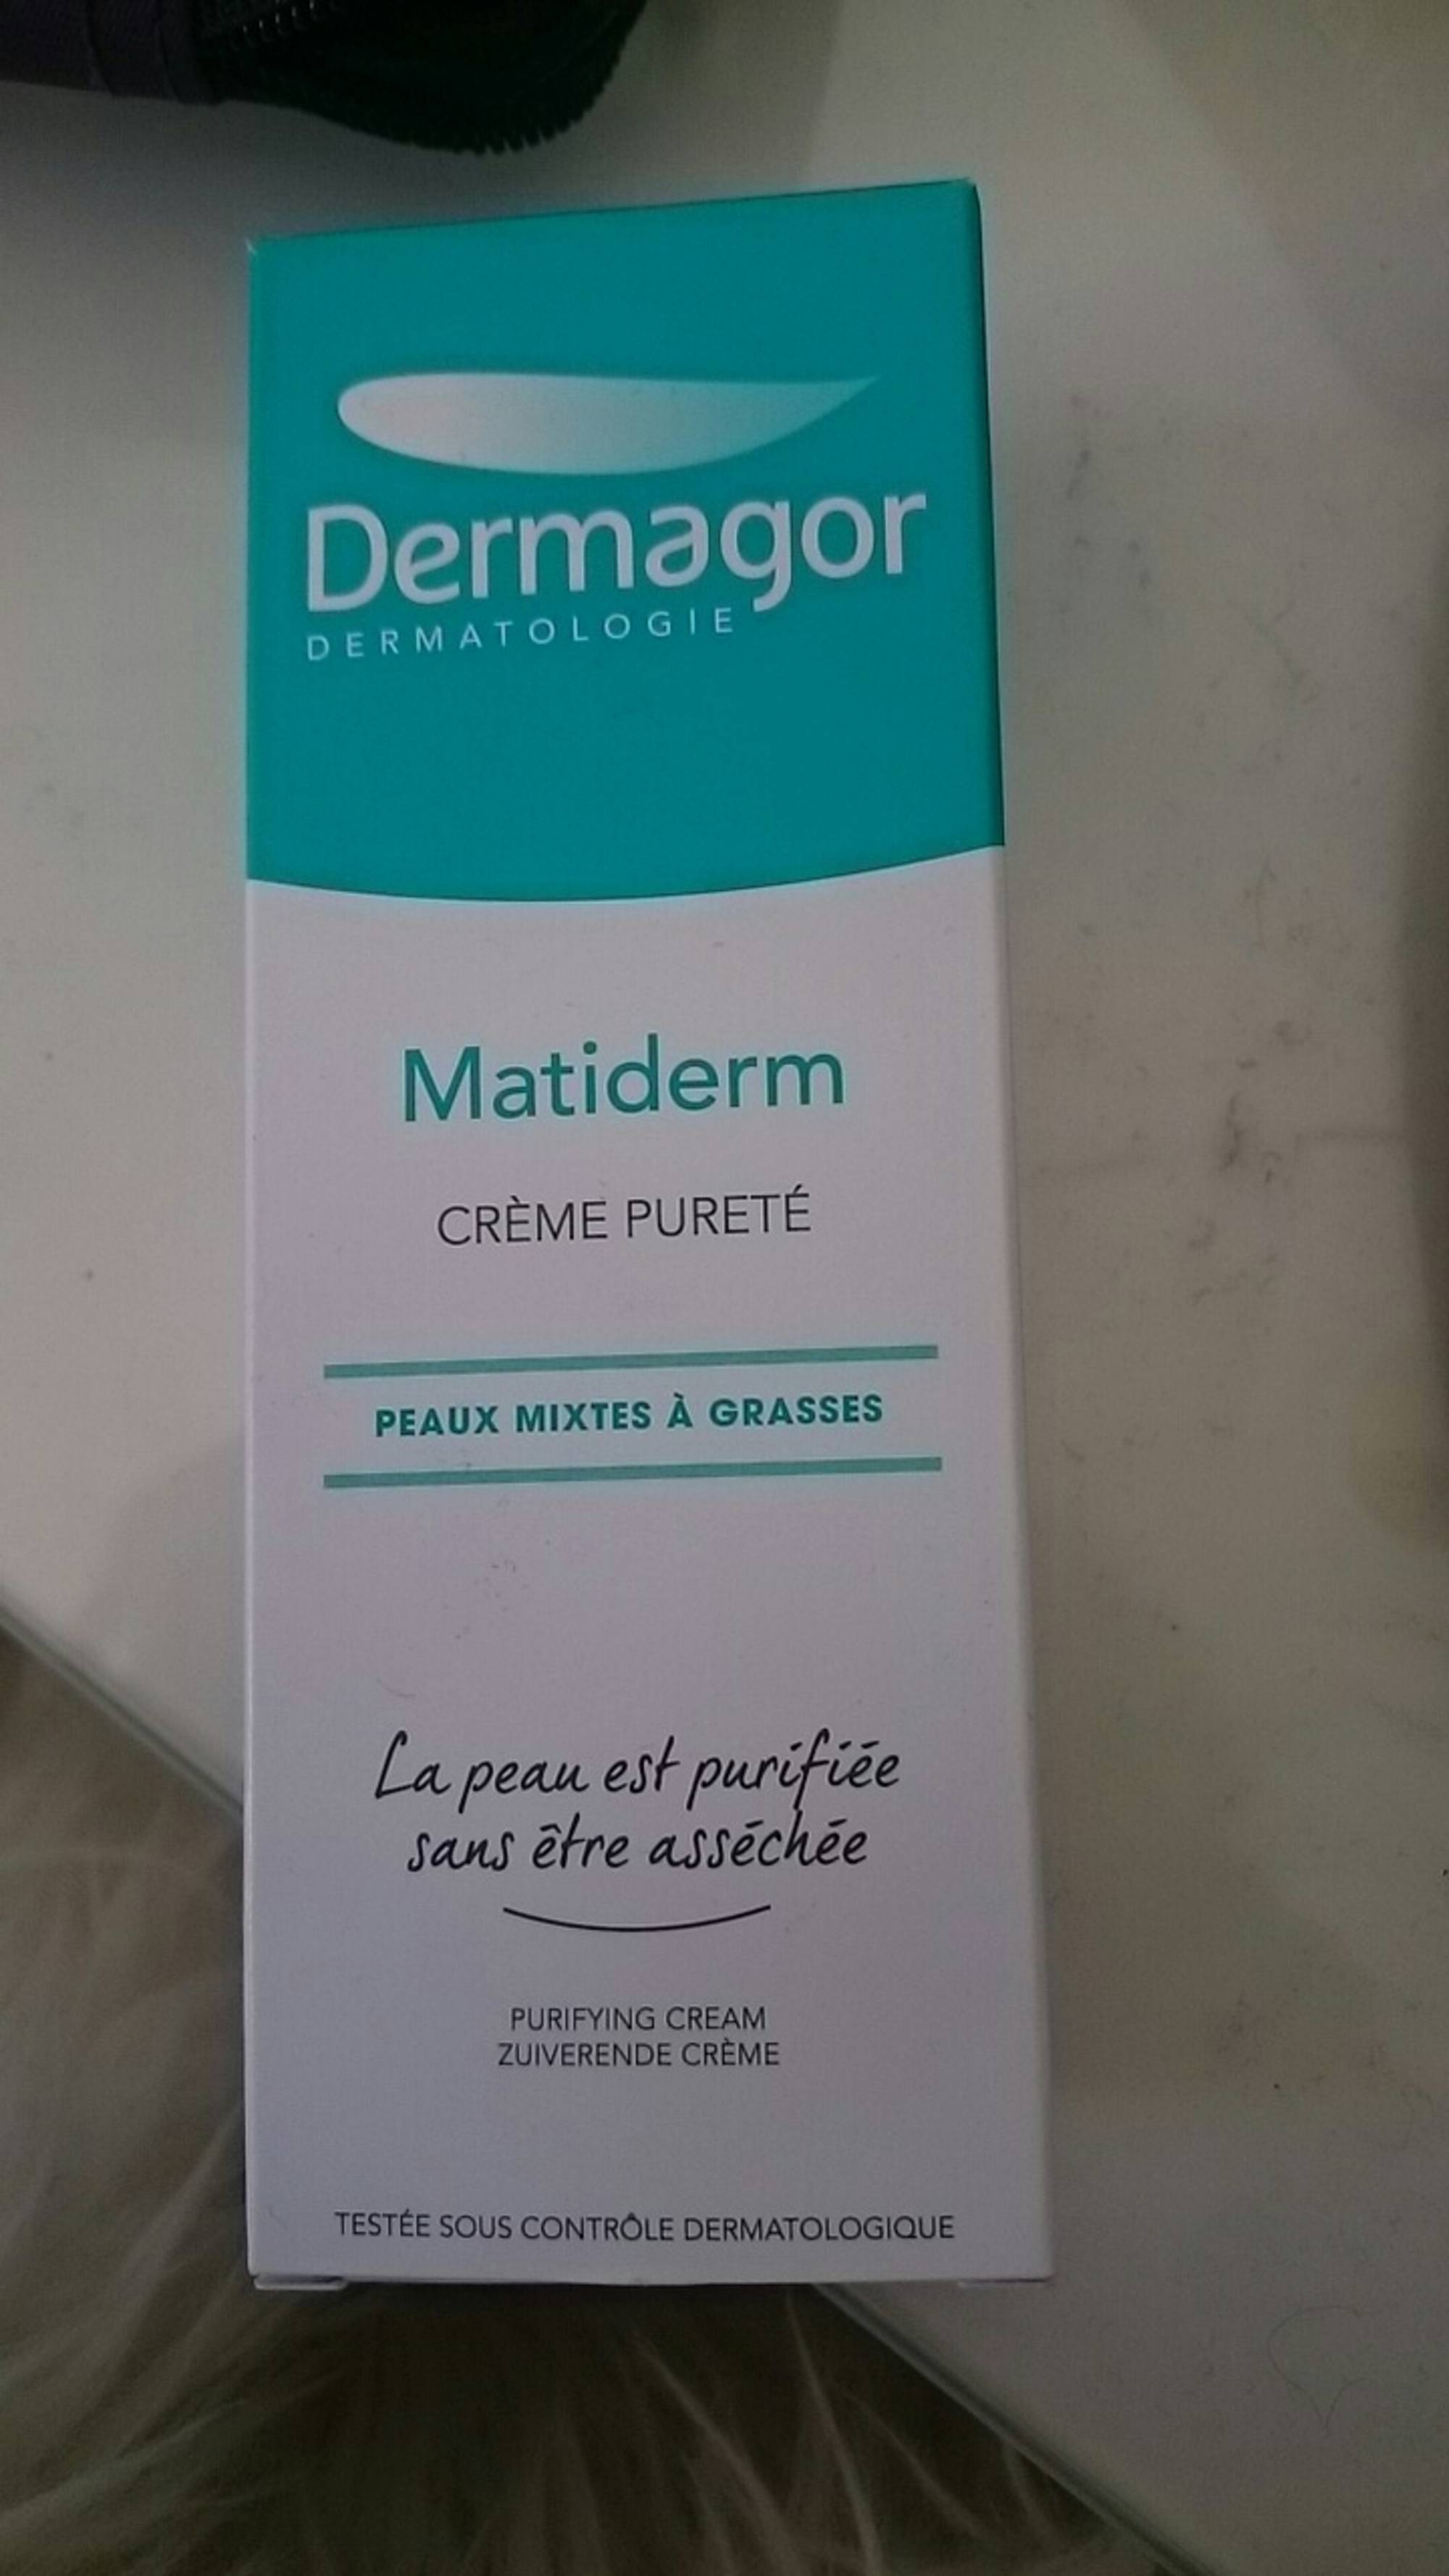 DERMAGOR - Matiderm - Crème pureté peaux mixtes à grasses